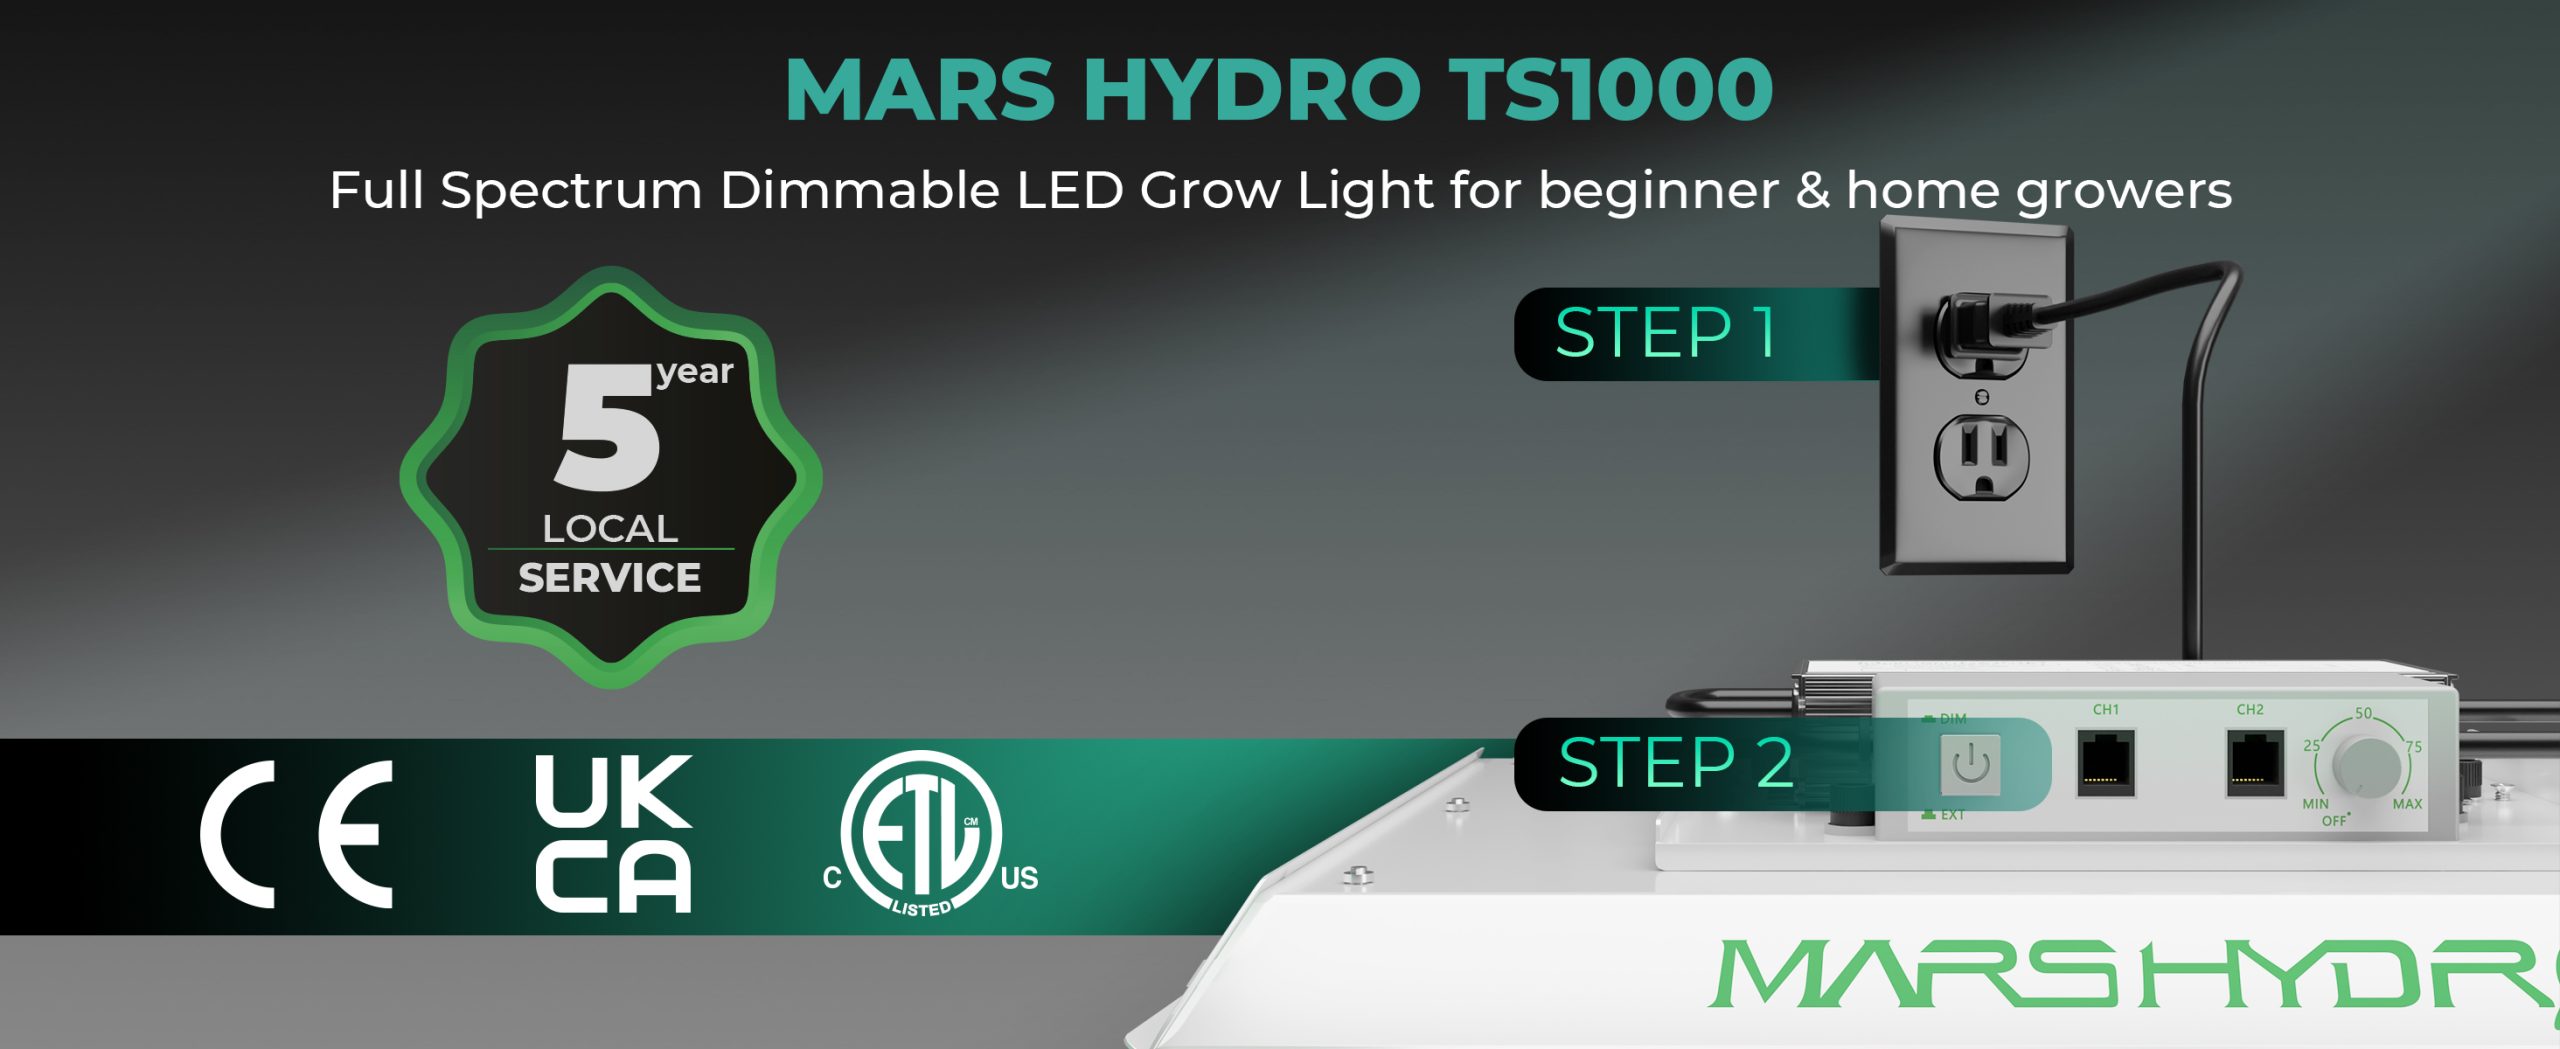 MARS-HYDRO-TS1000-Full-Spectrum-Dimmable-LED-Grow-Light-for-beginner-home-growers-scaled.jpg